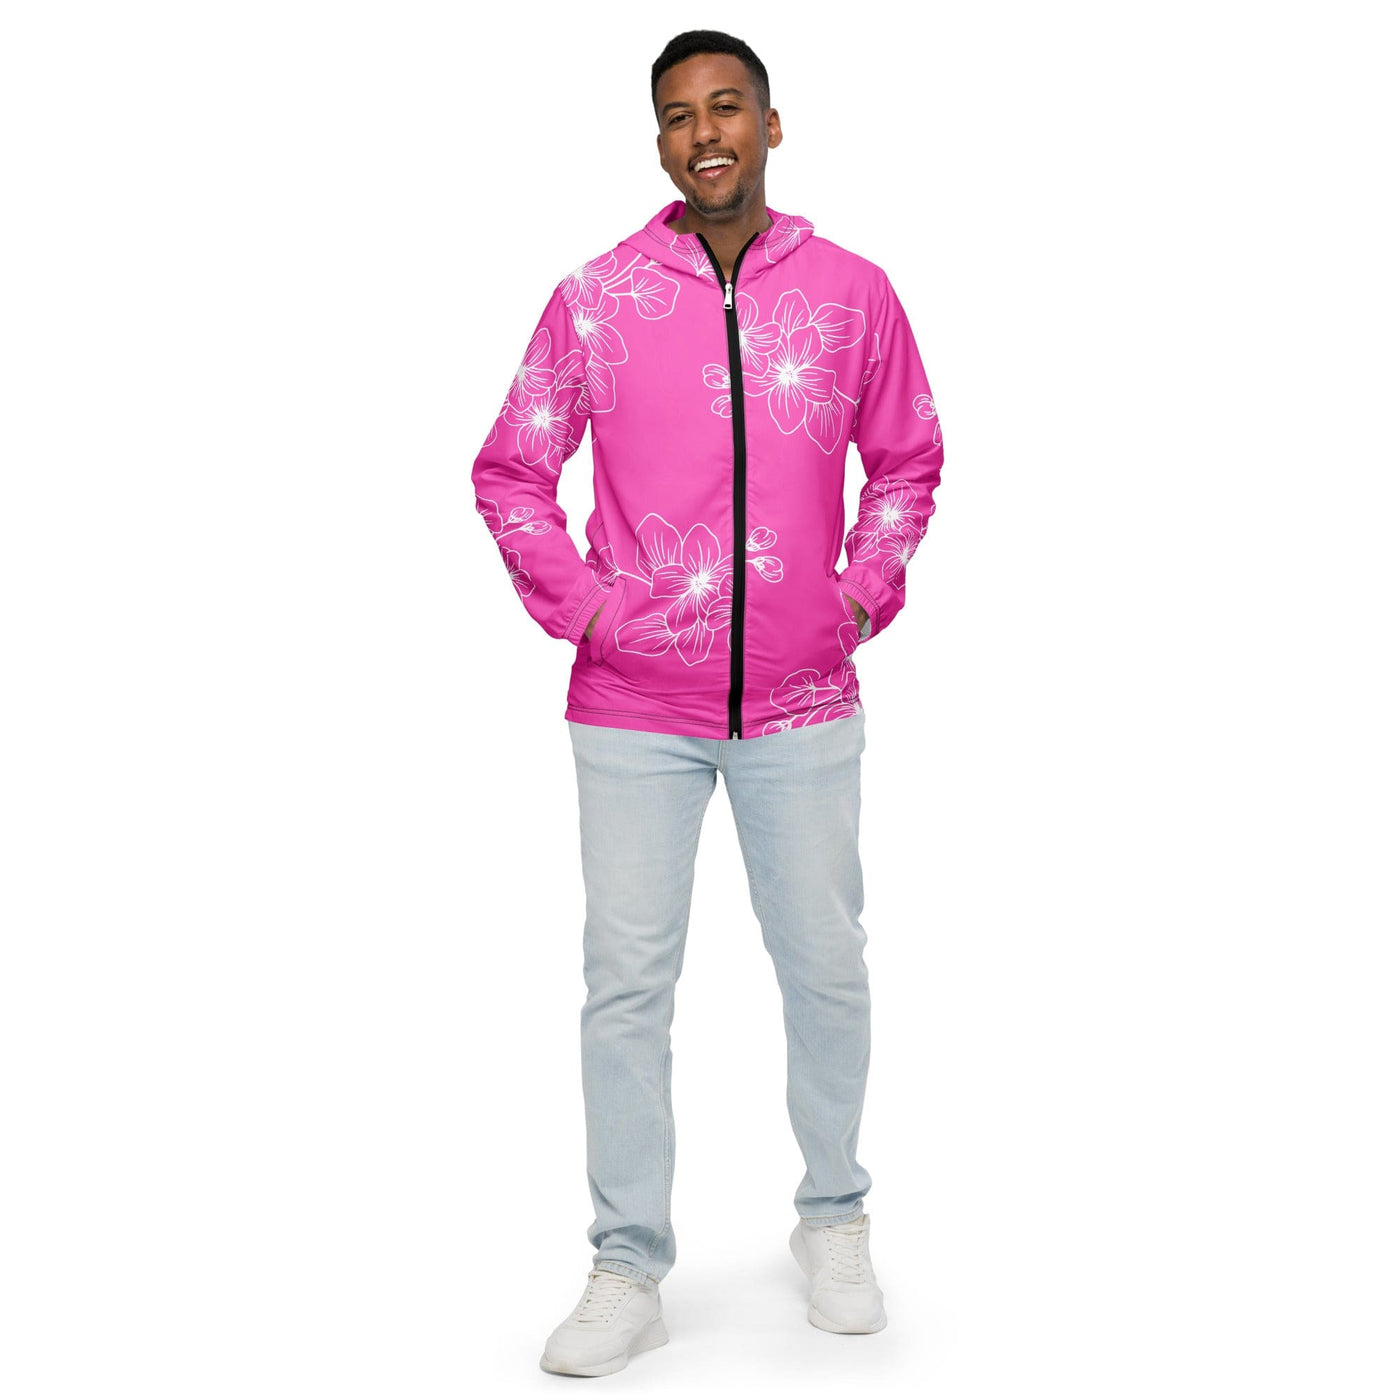 Mens Windbreaker Jacket With Hood Water-resistant Pink Floral Pattern